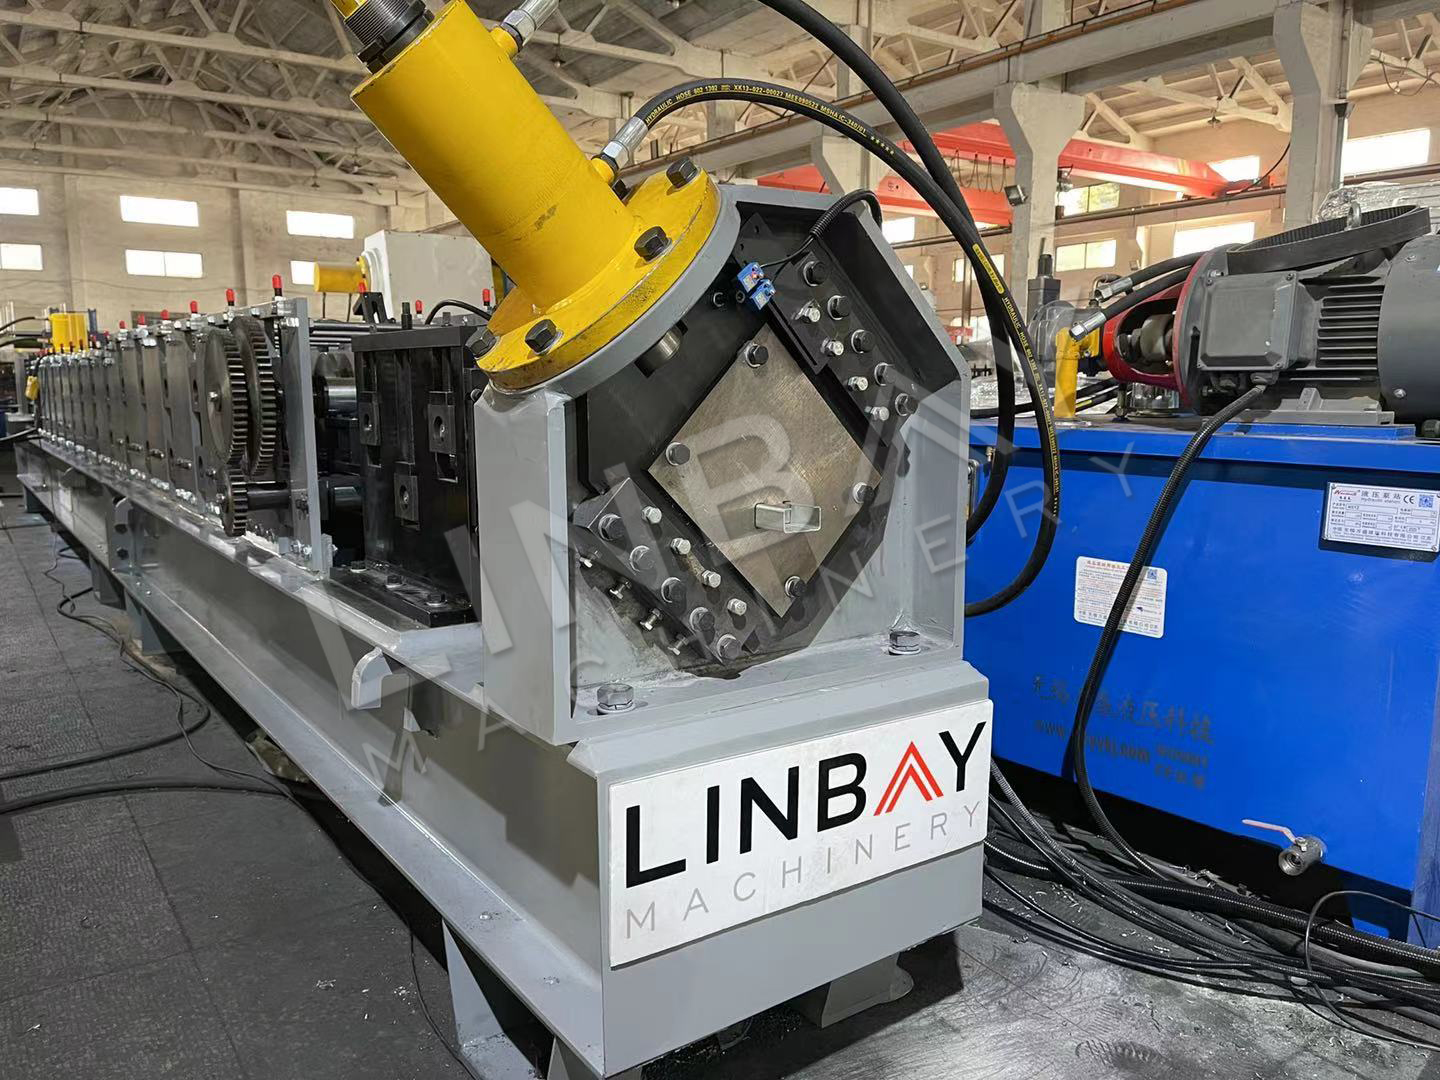 LINBAY-Exportación de Máquina สำหรับ Riostras ในชิลี